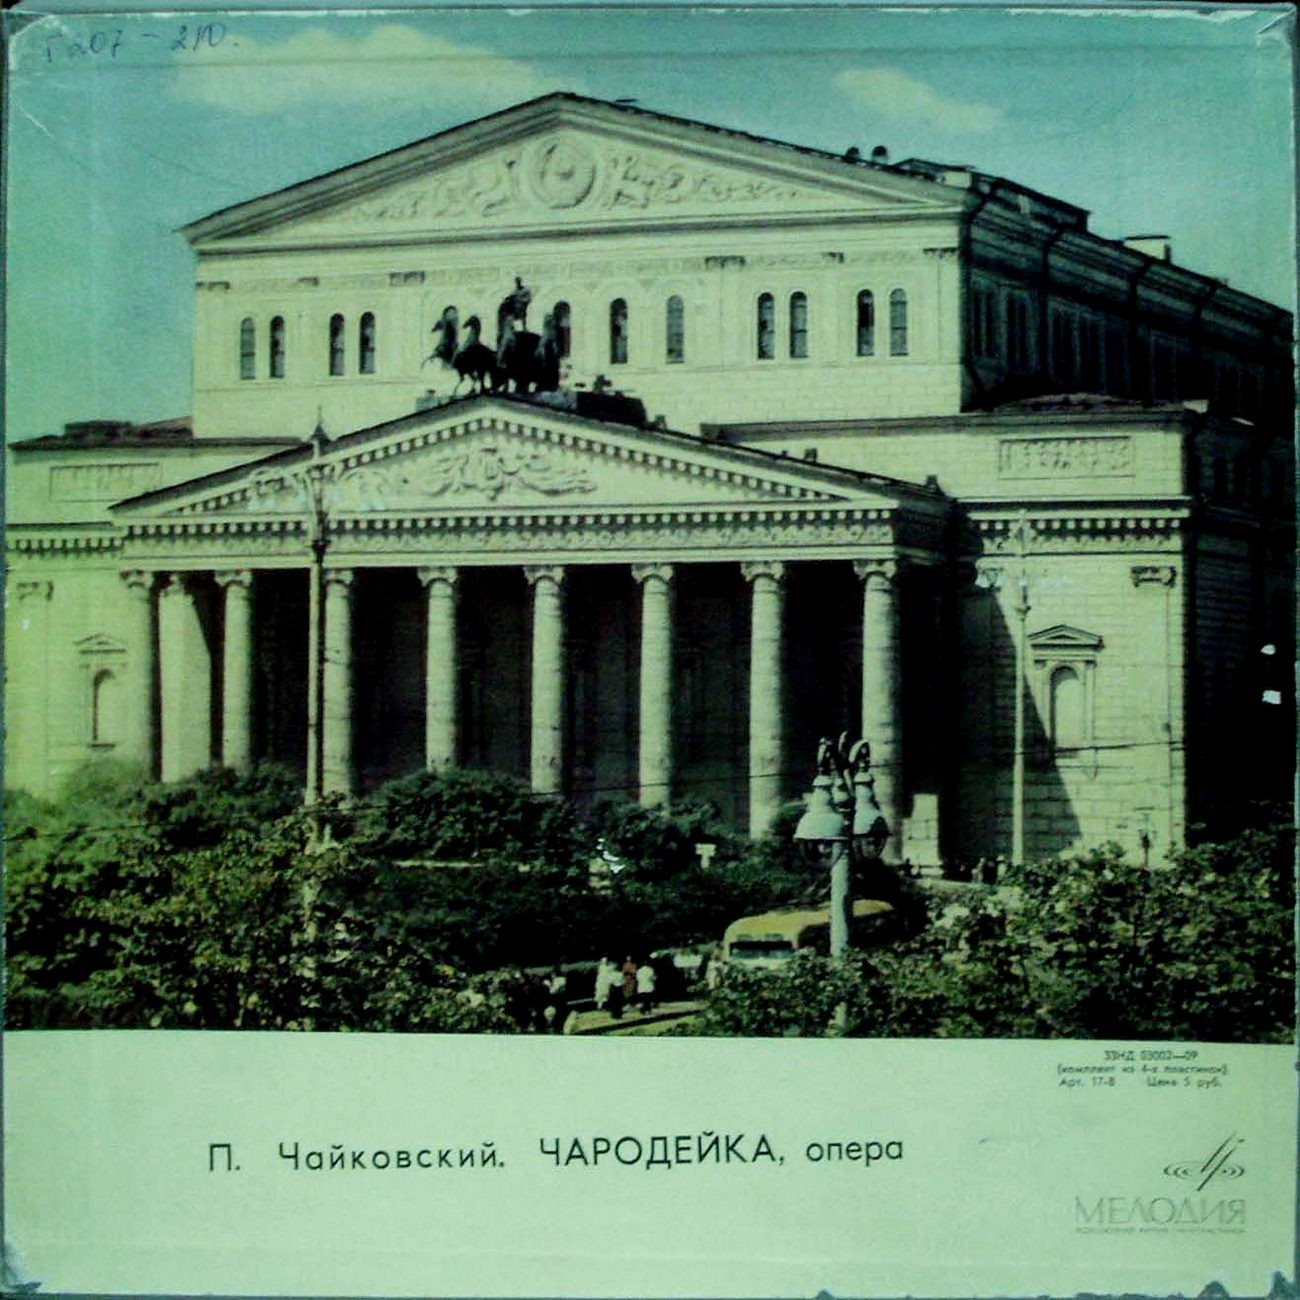 П. ЧАЙКОВСКИЙ (1840–1893): «Чародейка», опера в 4 д. (С. Самосуд)